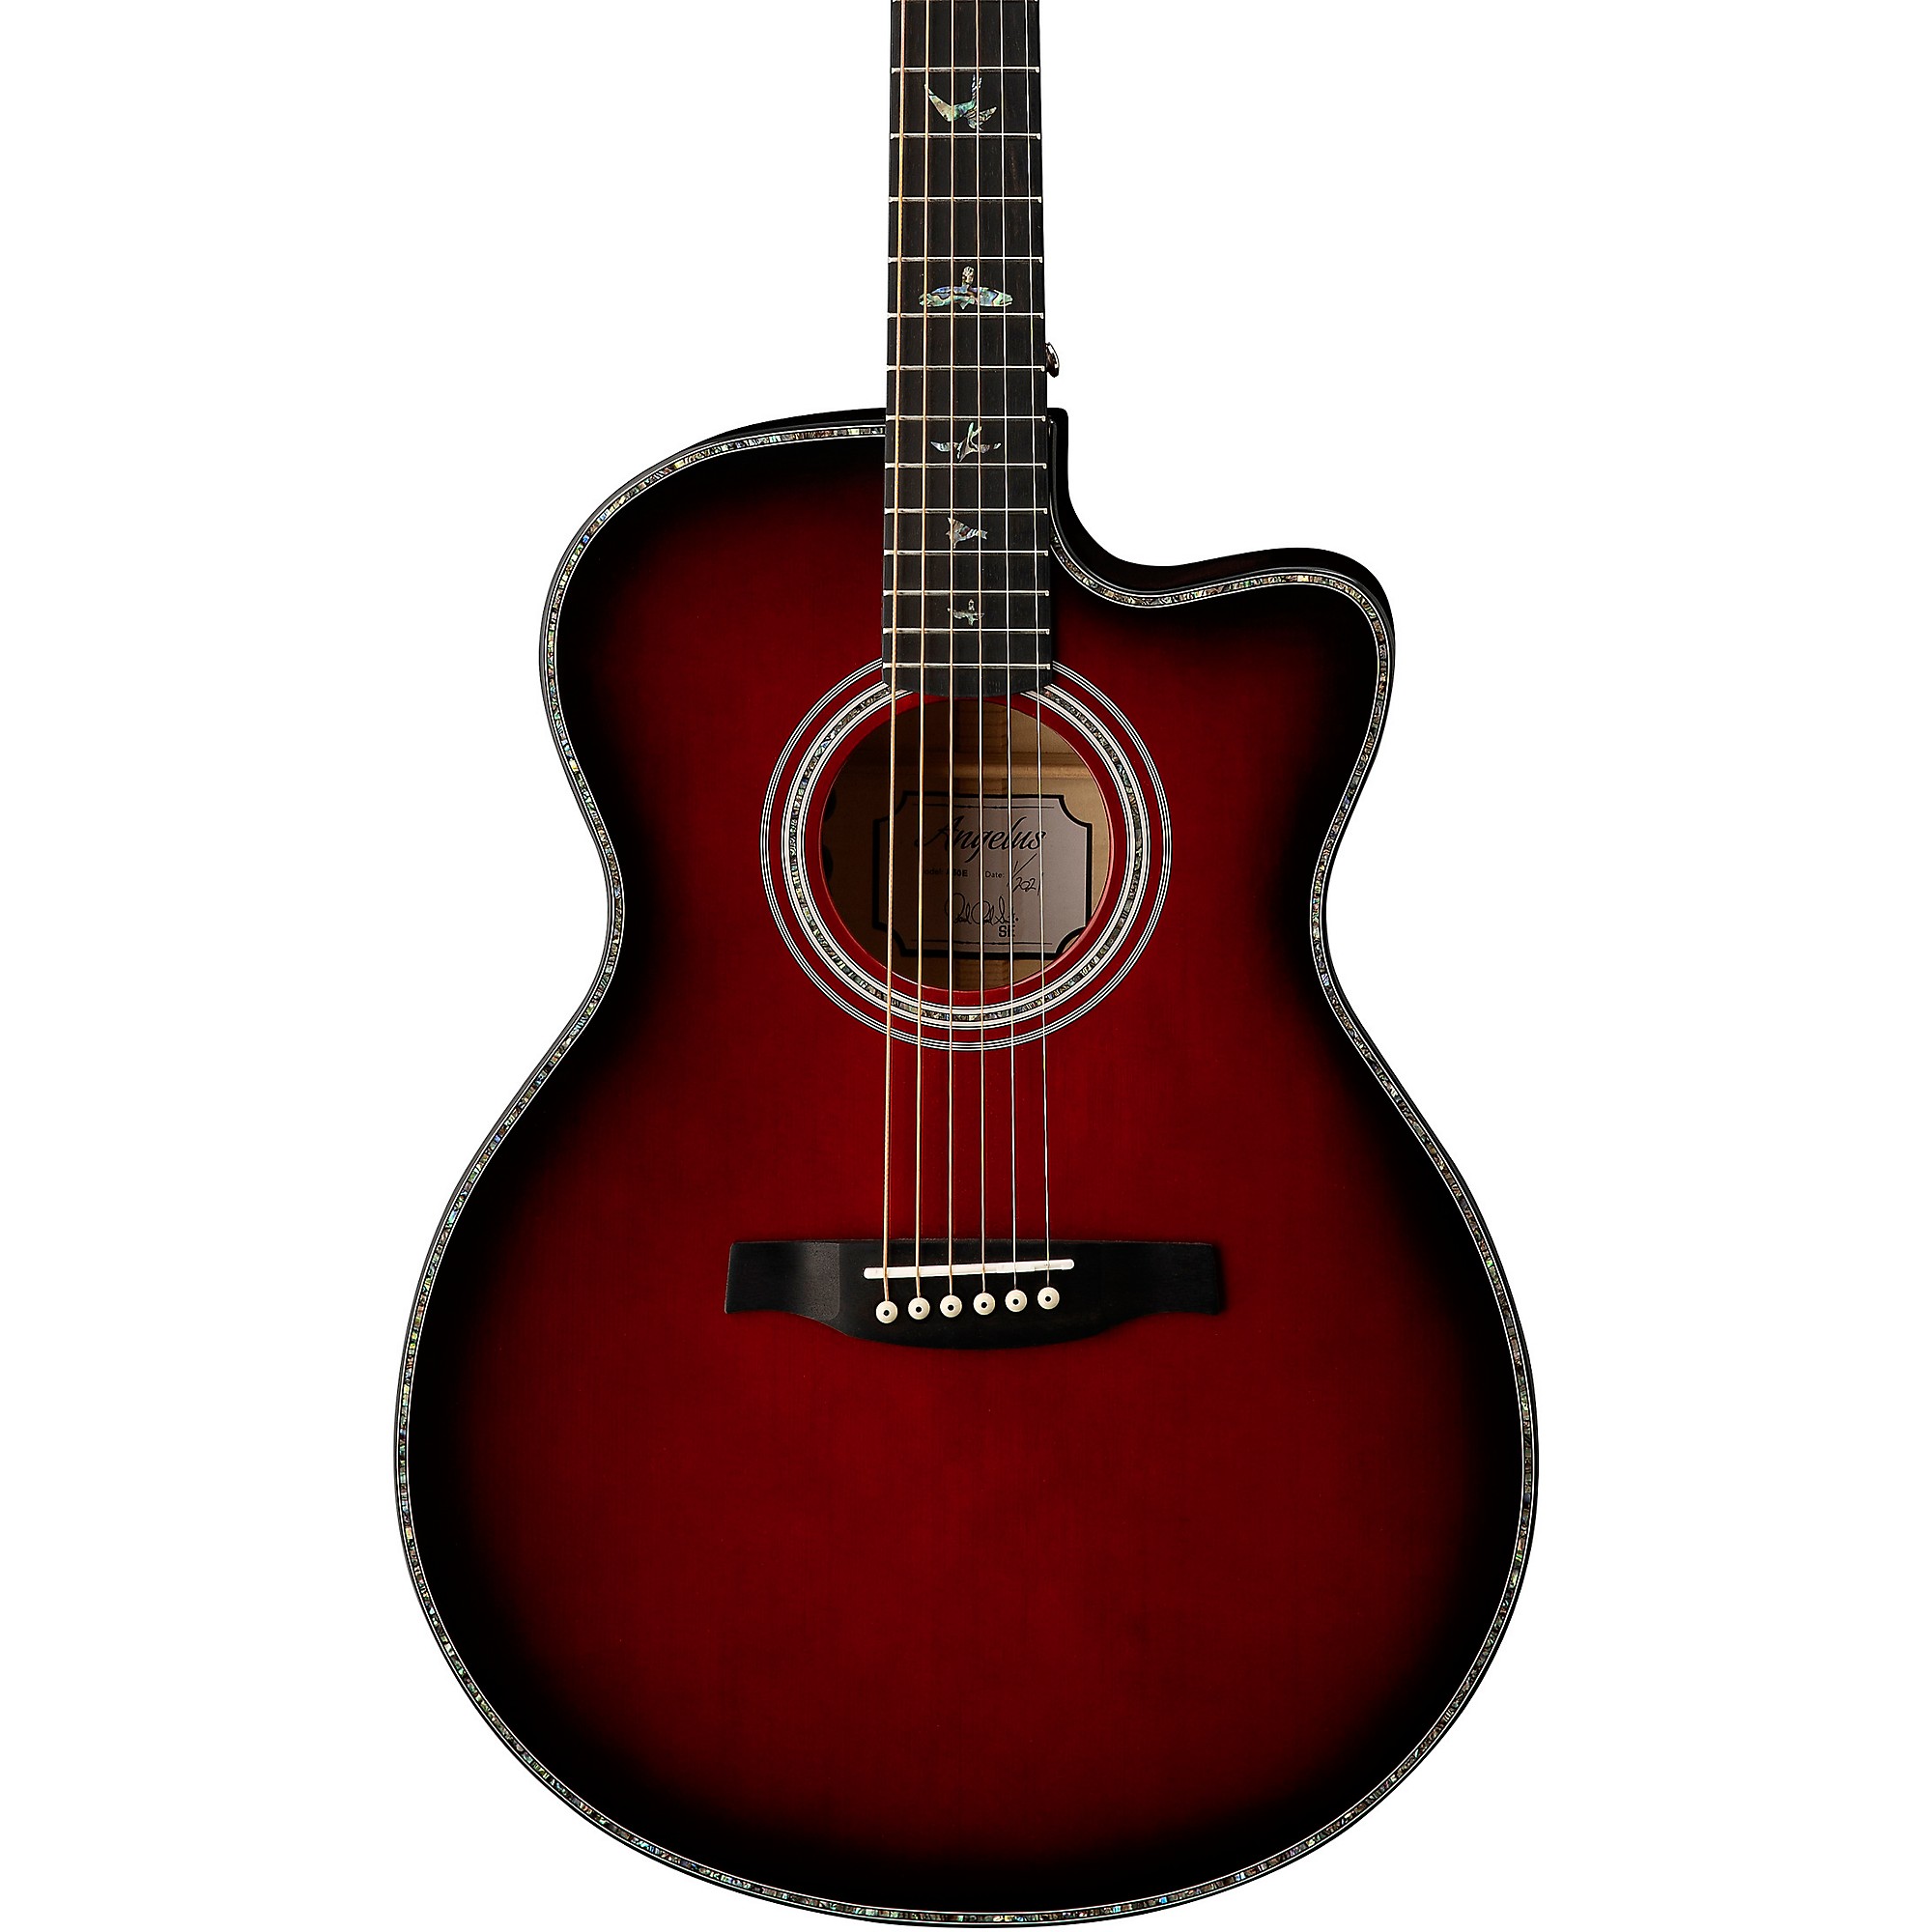 Акустически-электрическая гитара PRS Limited SE Angelus A50E Fired Red Burst